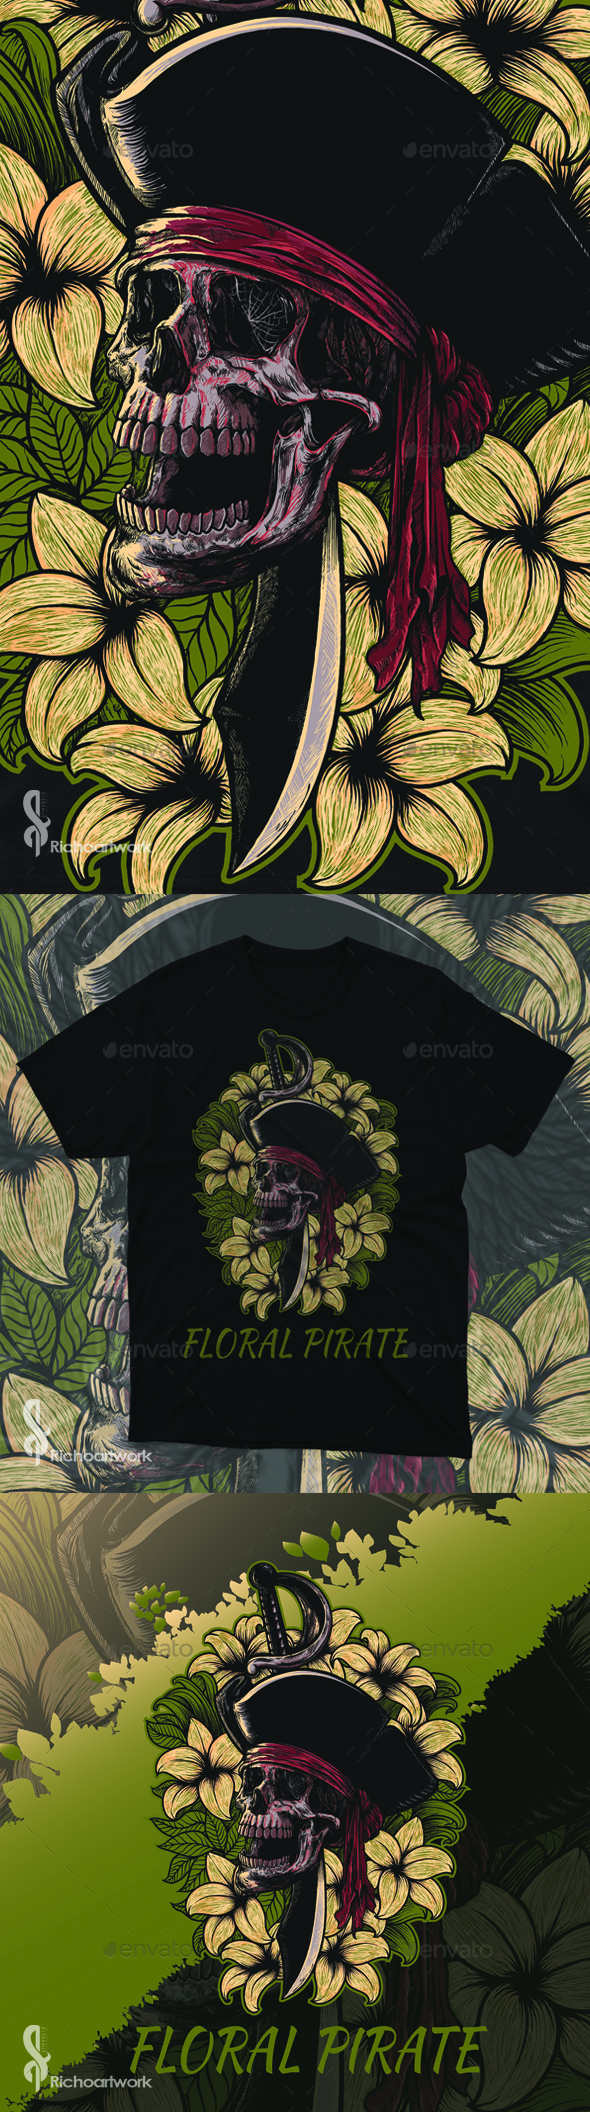 Floral Pirates T-Shirt Design llustration